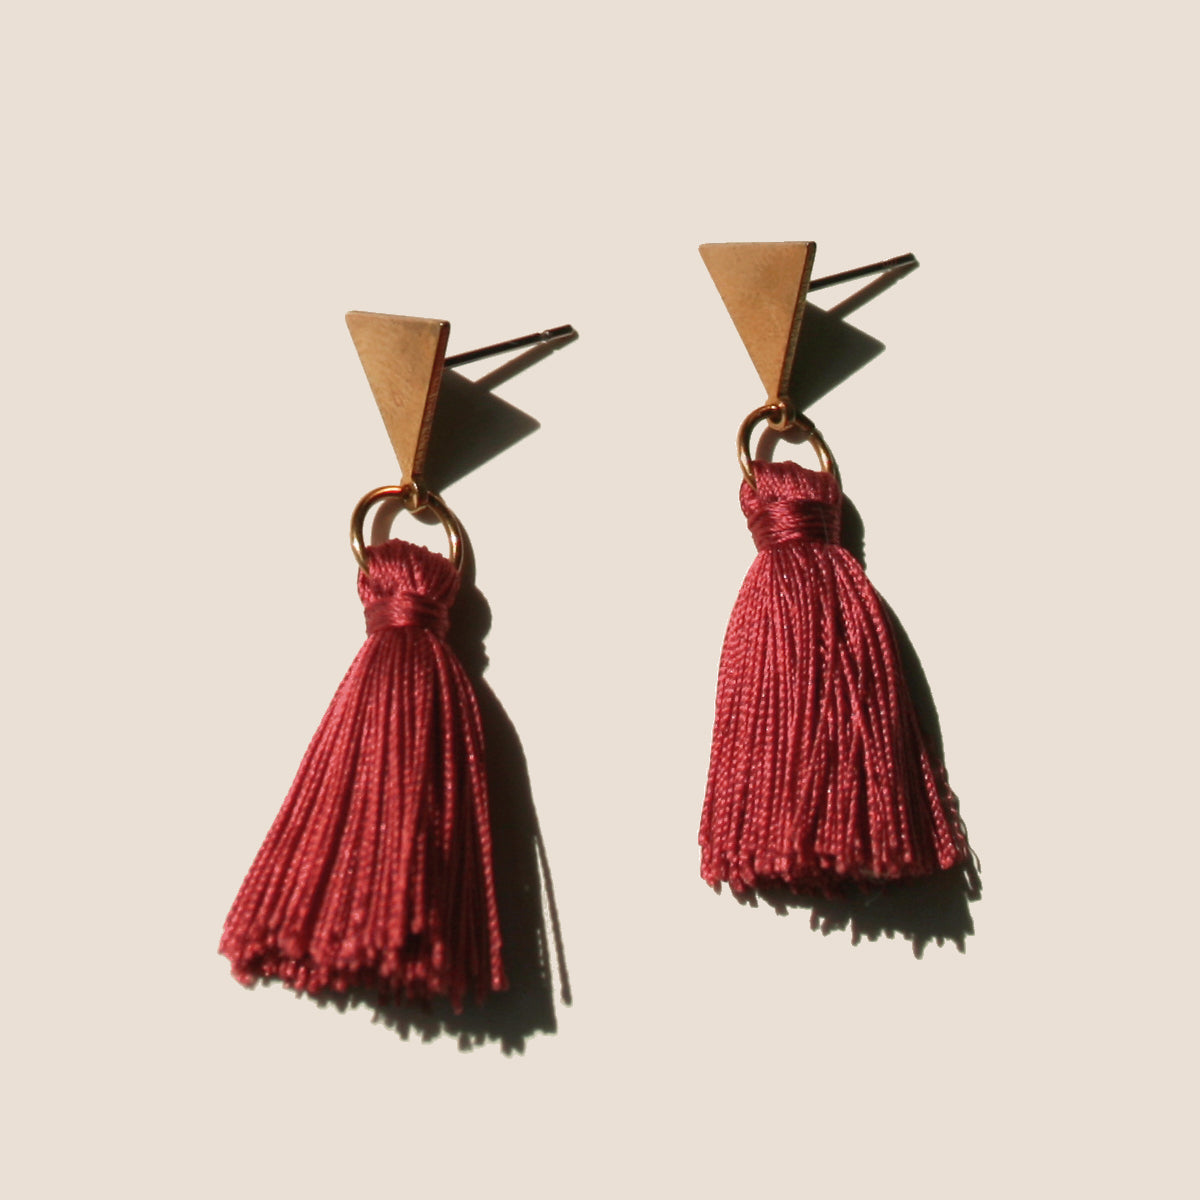 The Vibrant Berlin Stud Earrings _ Triangle stud with merlot red silk Tassel earrings on ears